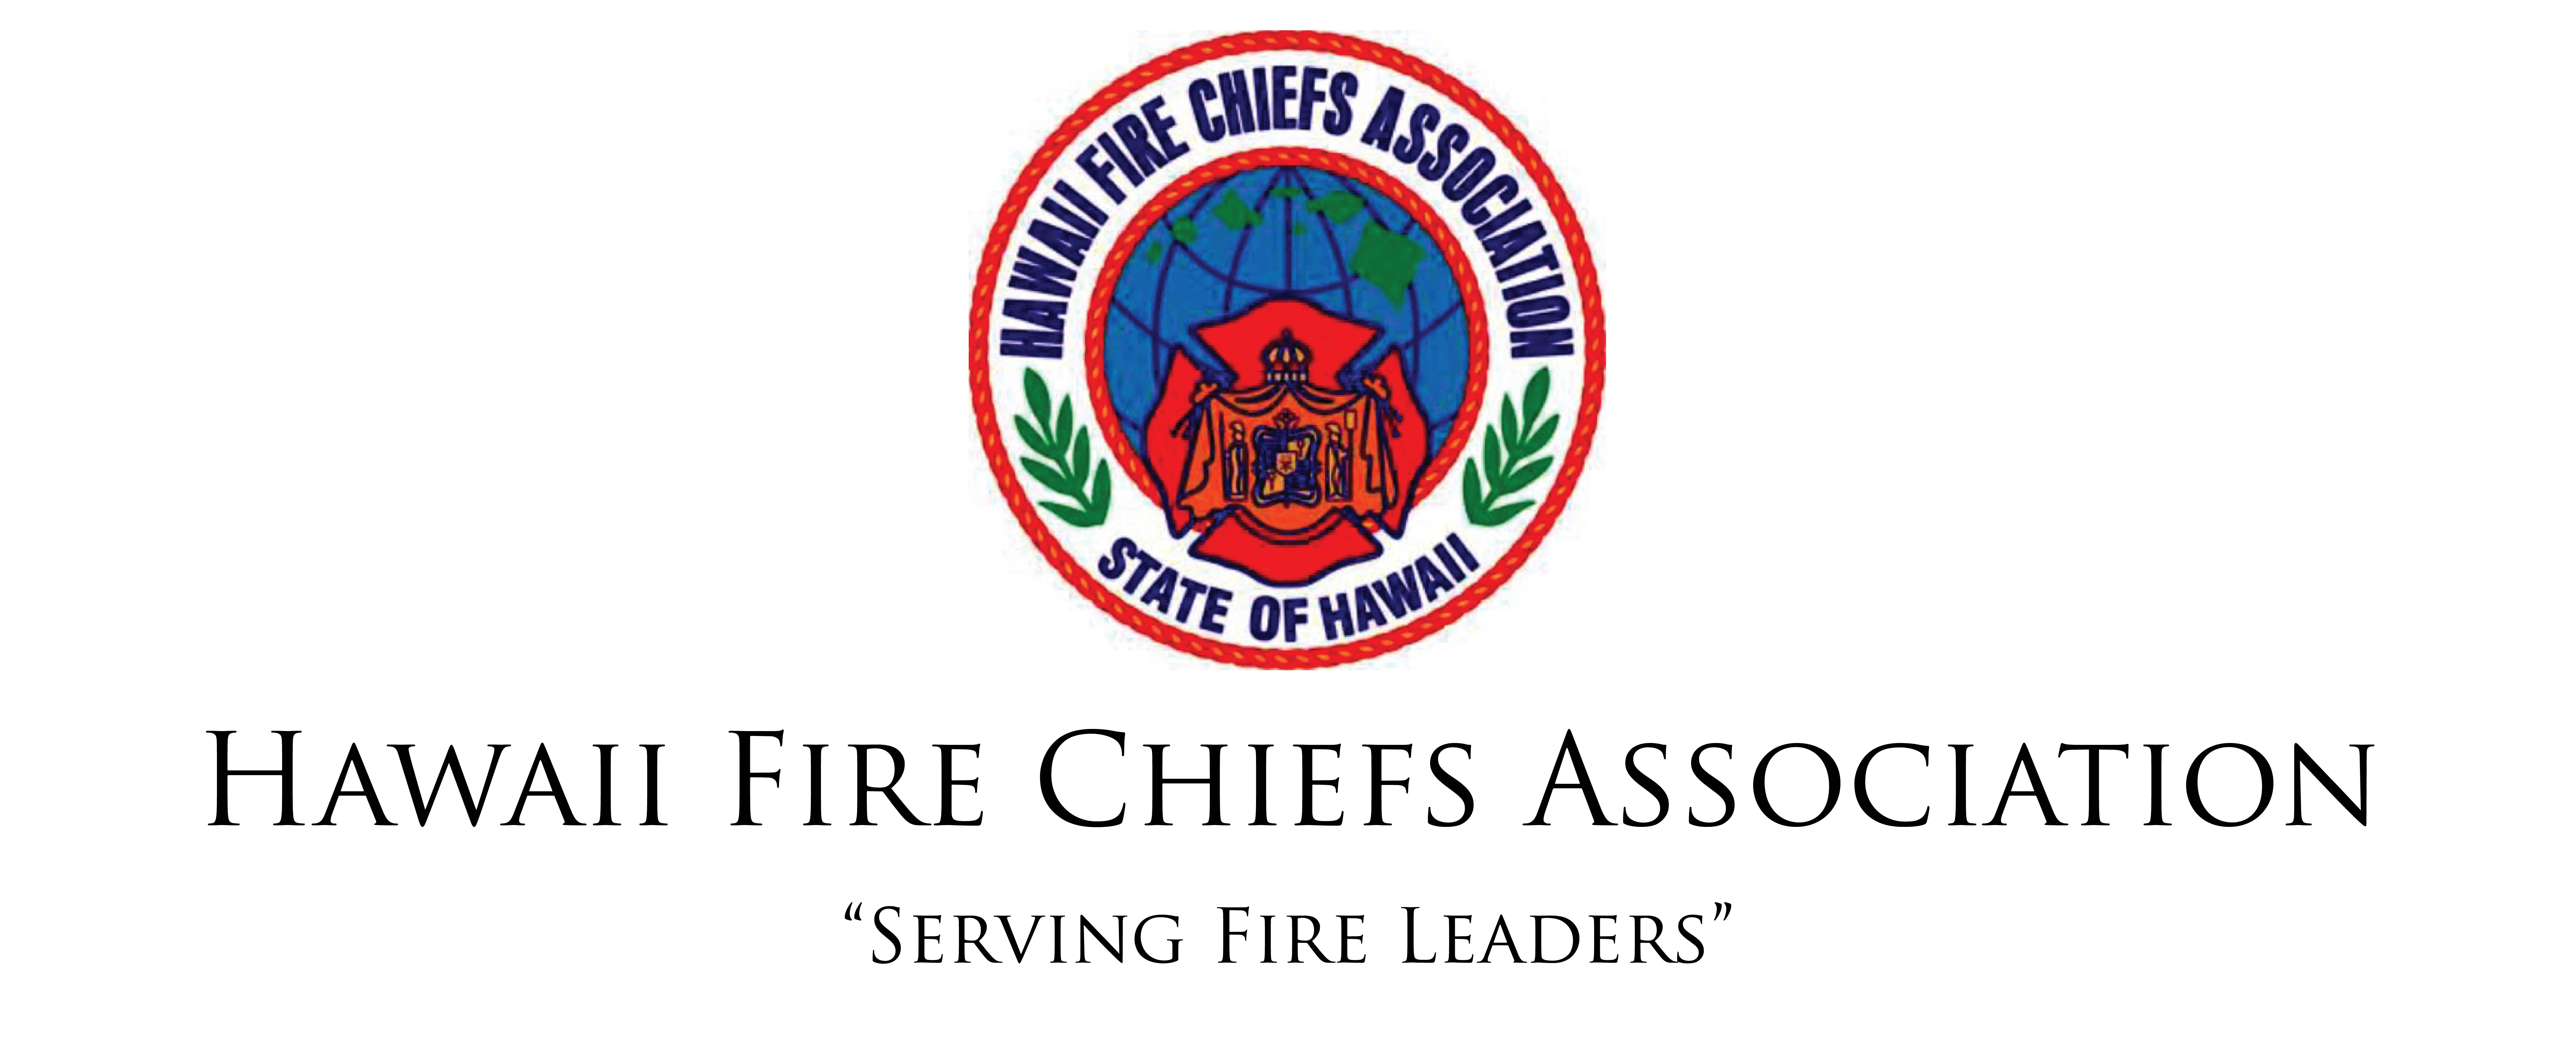 Hawaii Fire Chiefs Association